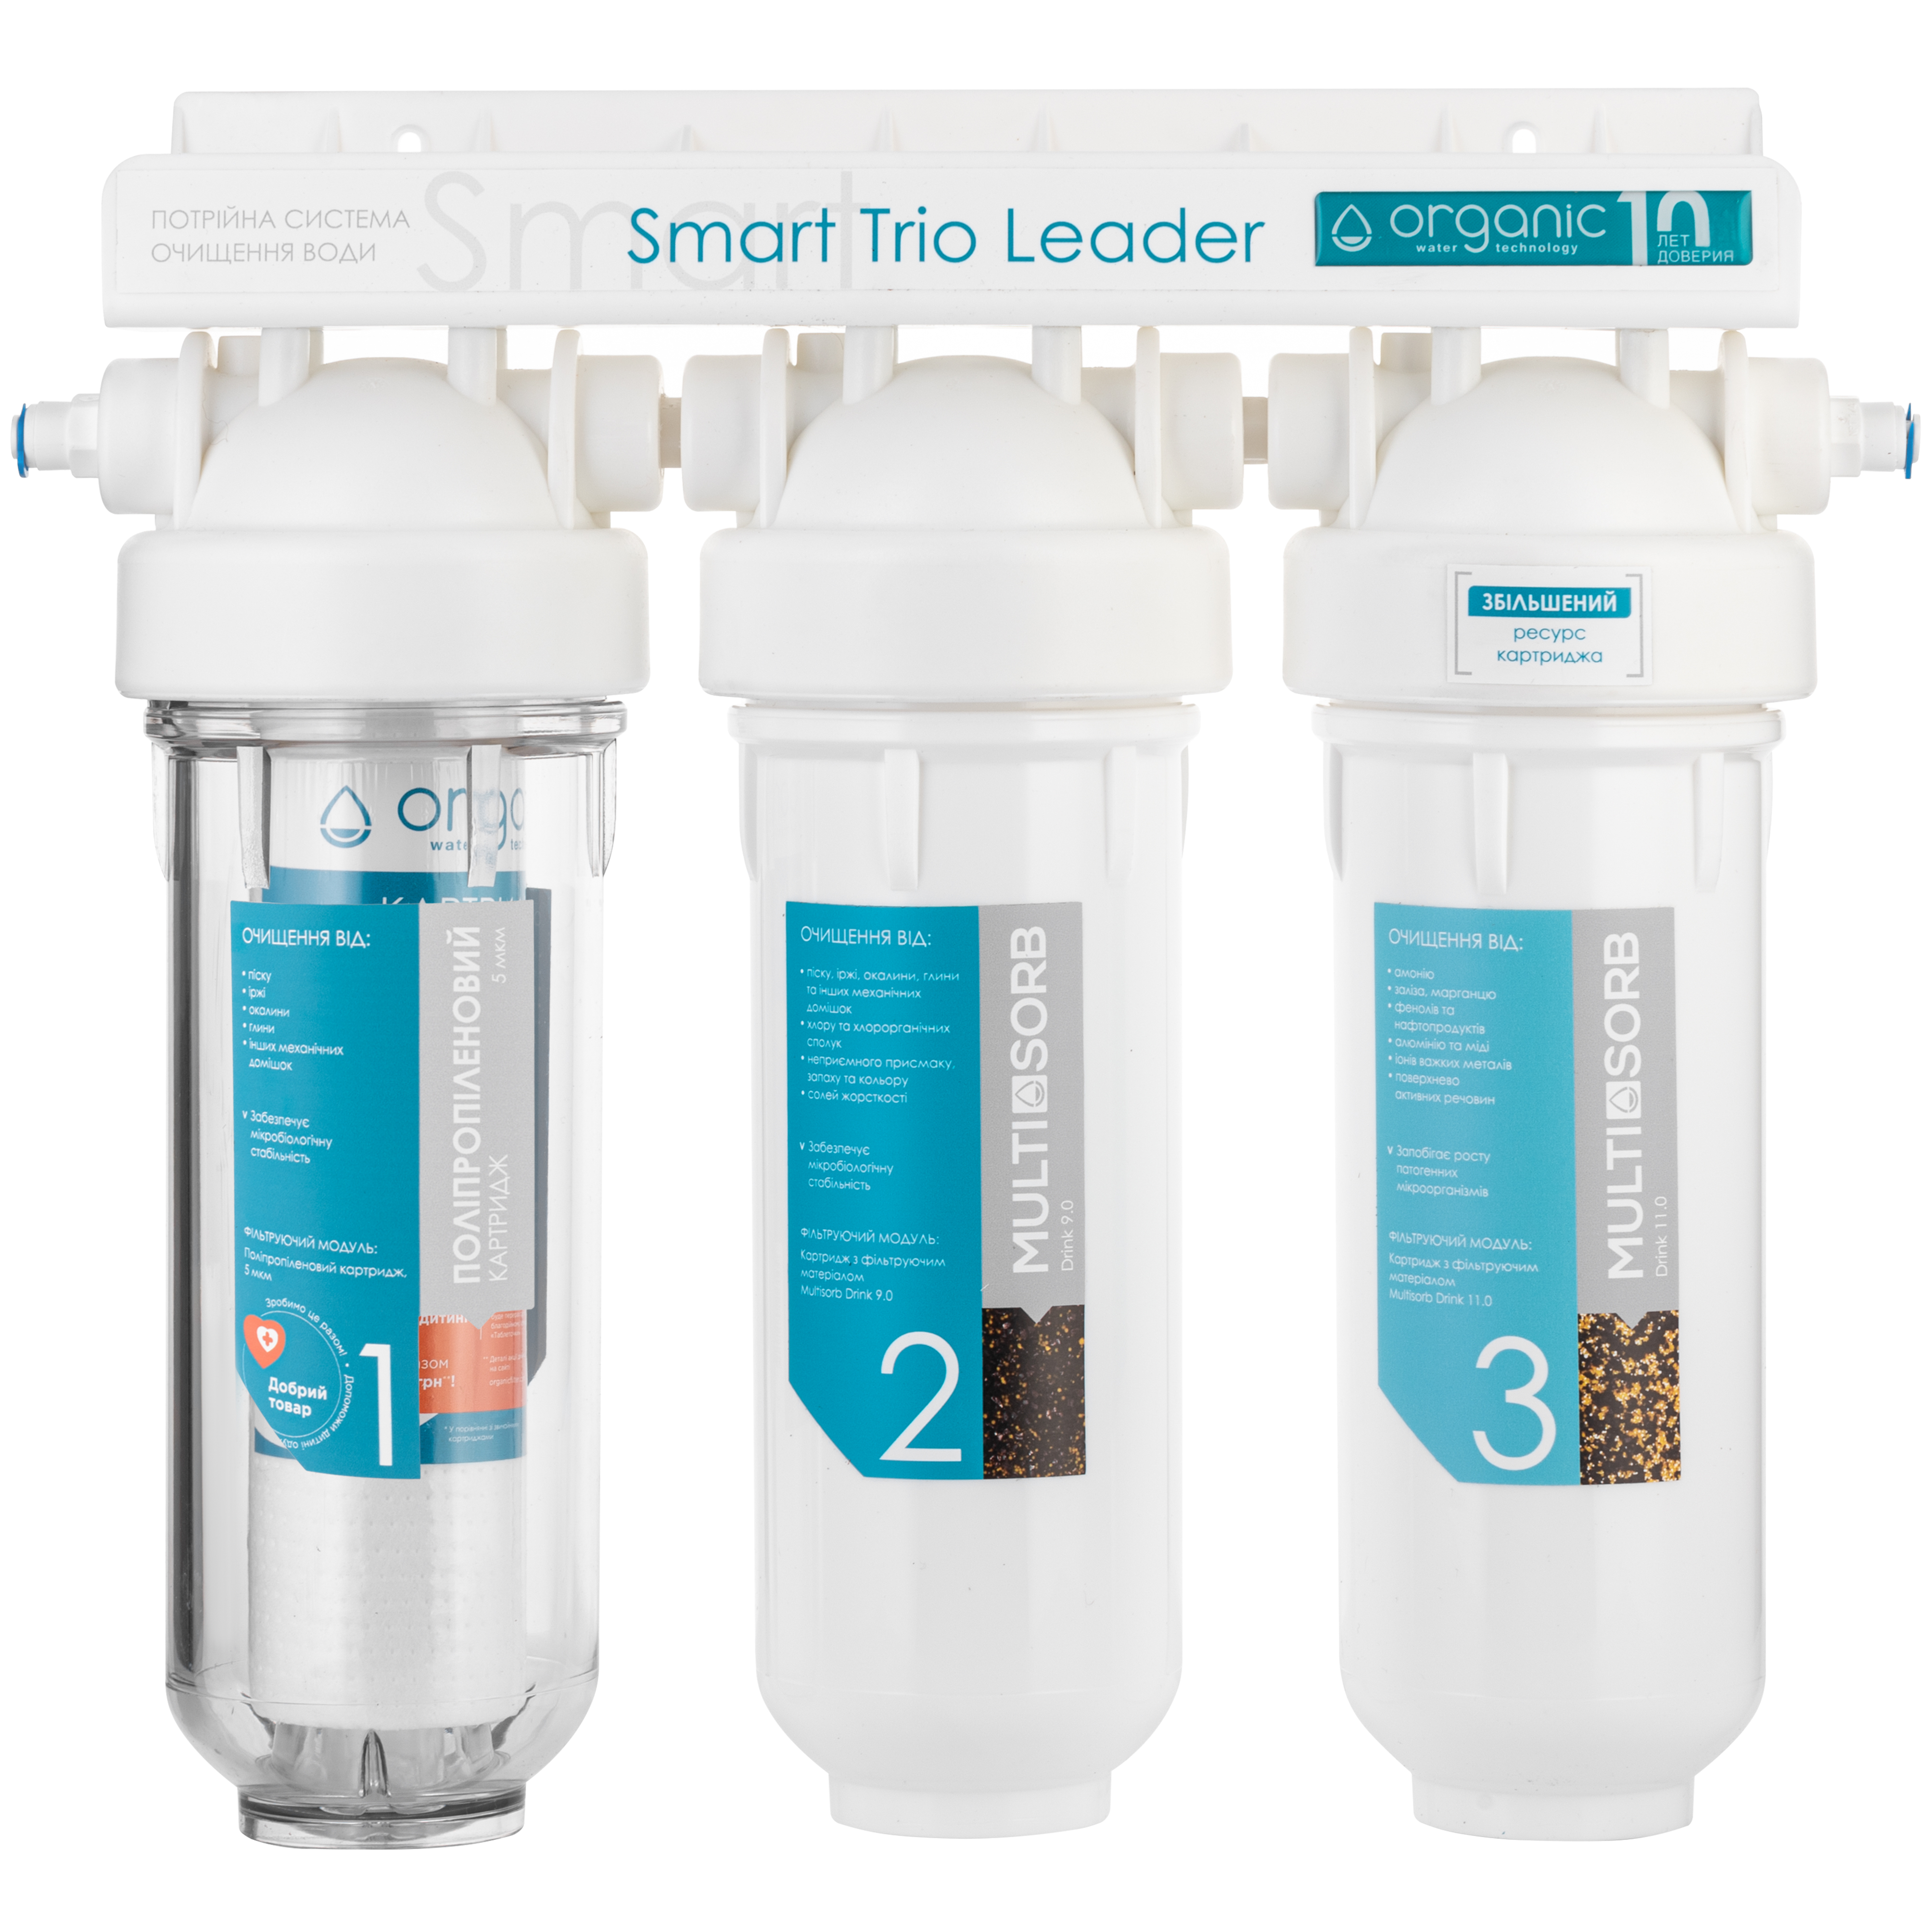 Відгуки фільтр для води Organic Smart TRIO LEADER